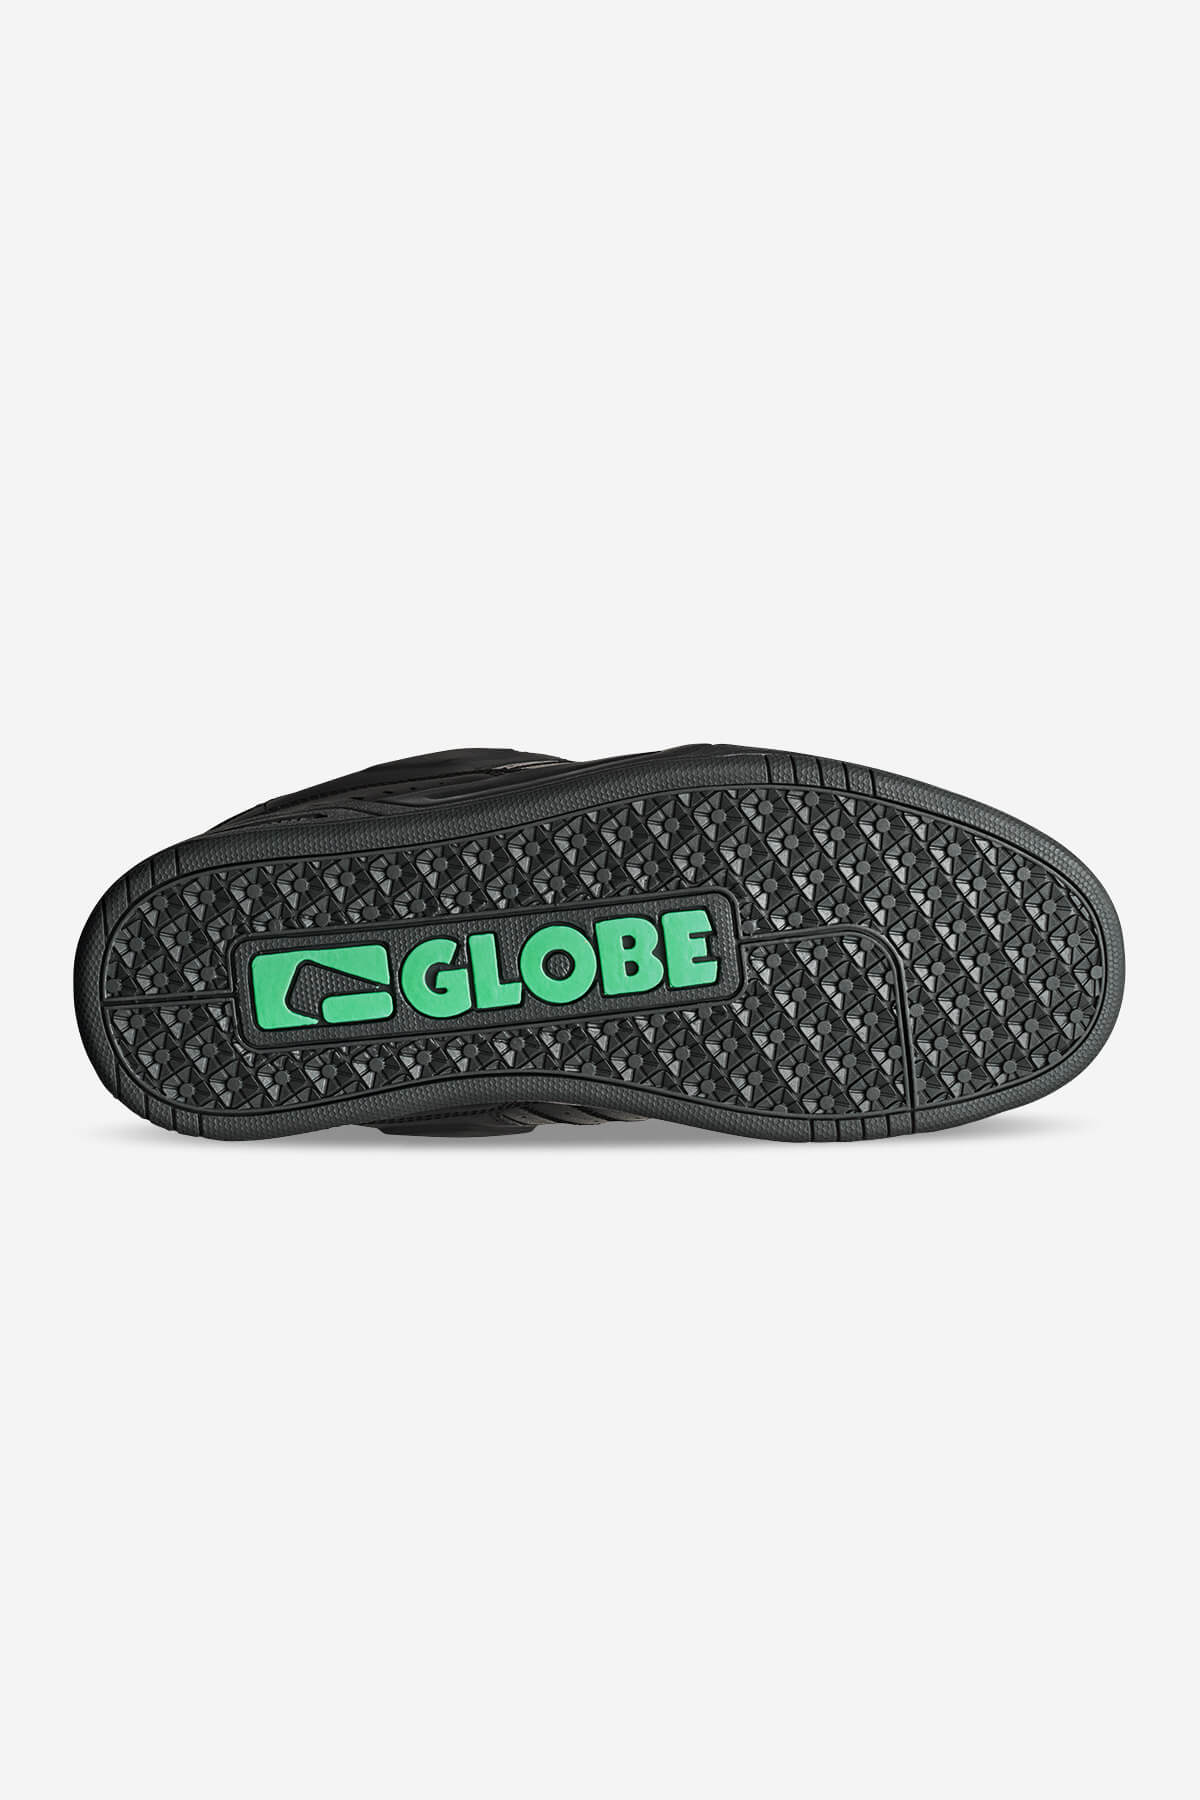 Globe - Fusion - Phantom Dip - Skate Shoes